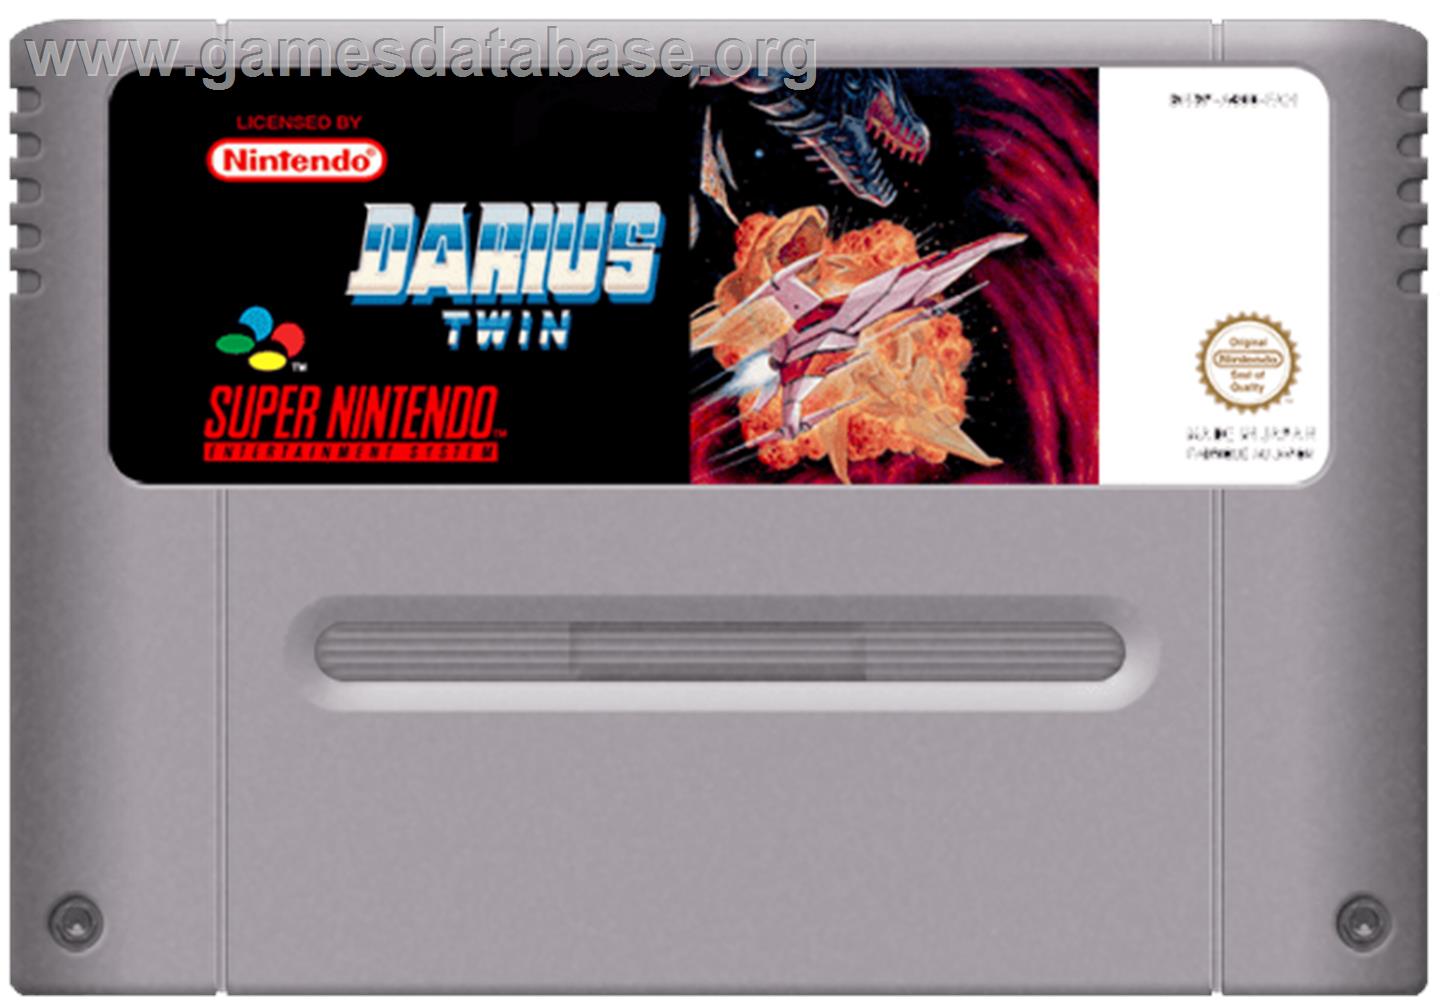 Darius Twin - Nintendo SNES - Artwork - Cartridge